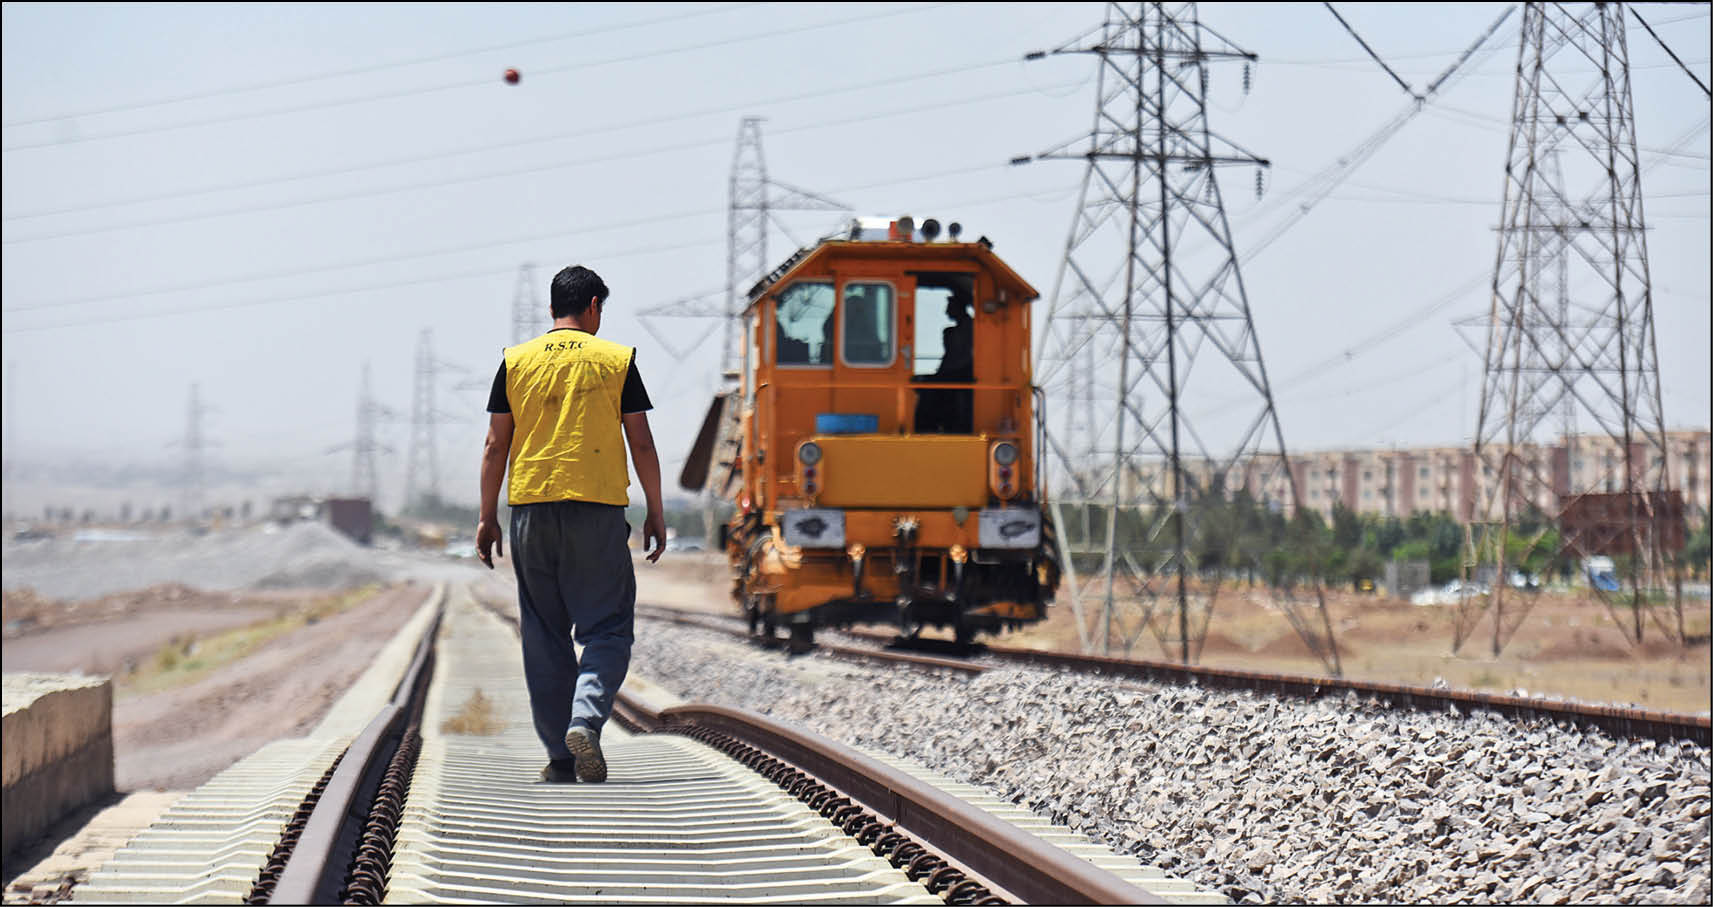 منابع مالی کم است، اما تکمیل خط متروی تهران - پرند ادامه دارد